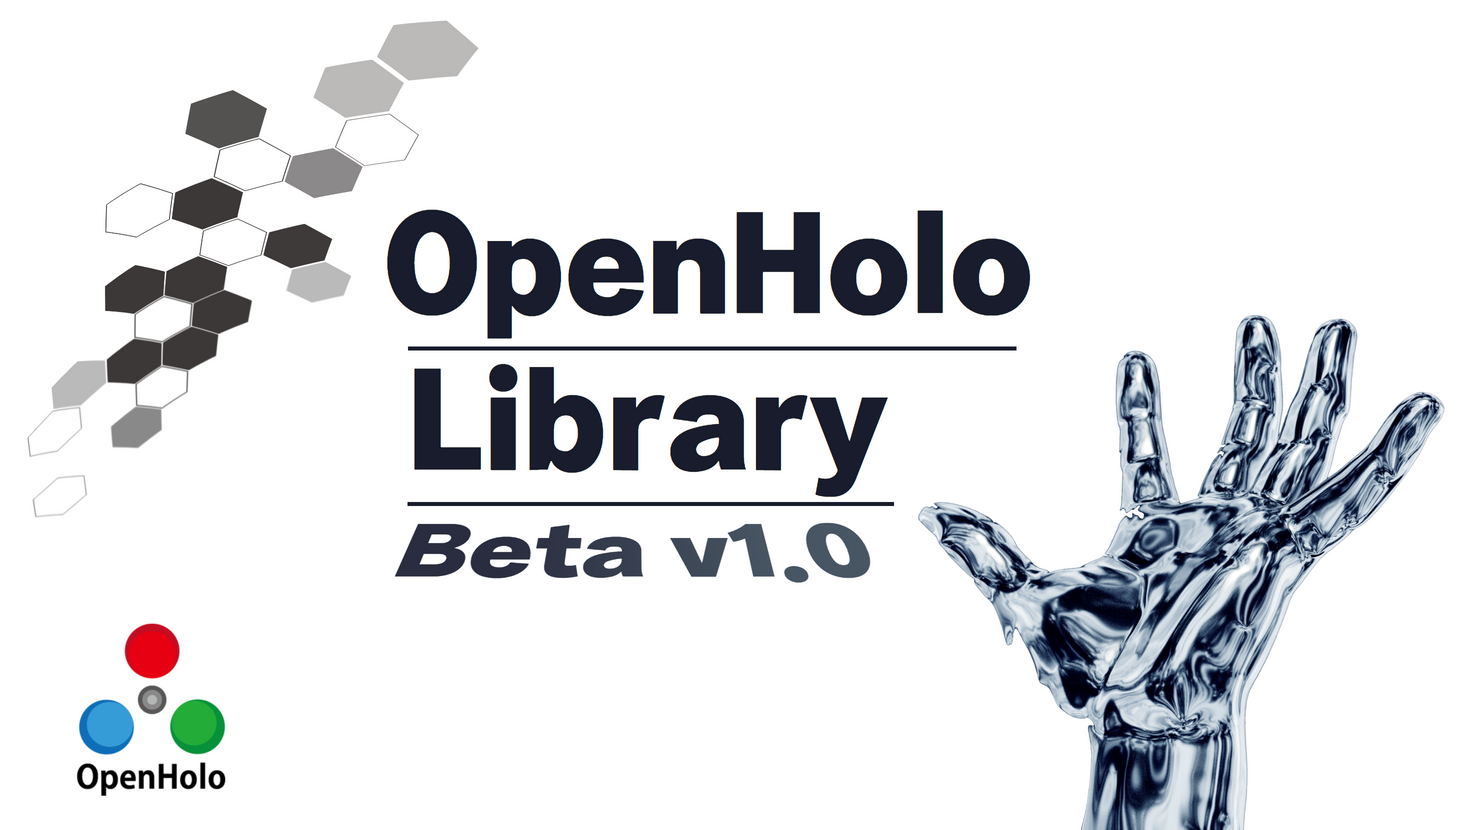 OPENHOLO Library beta v1.0